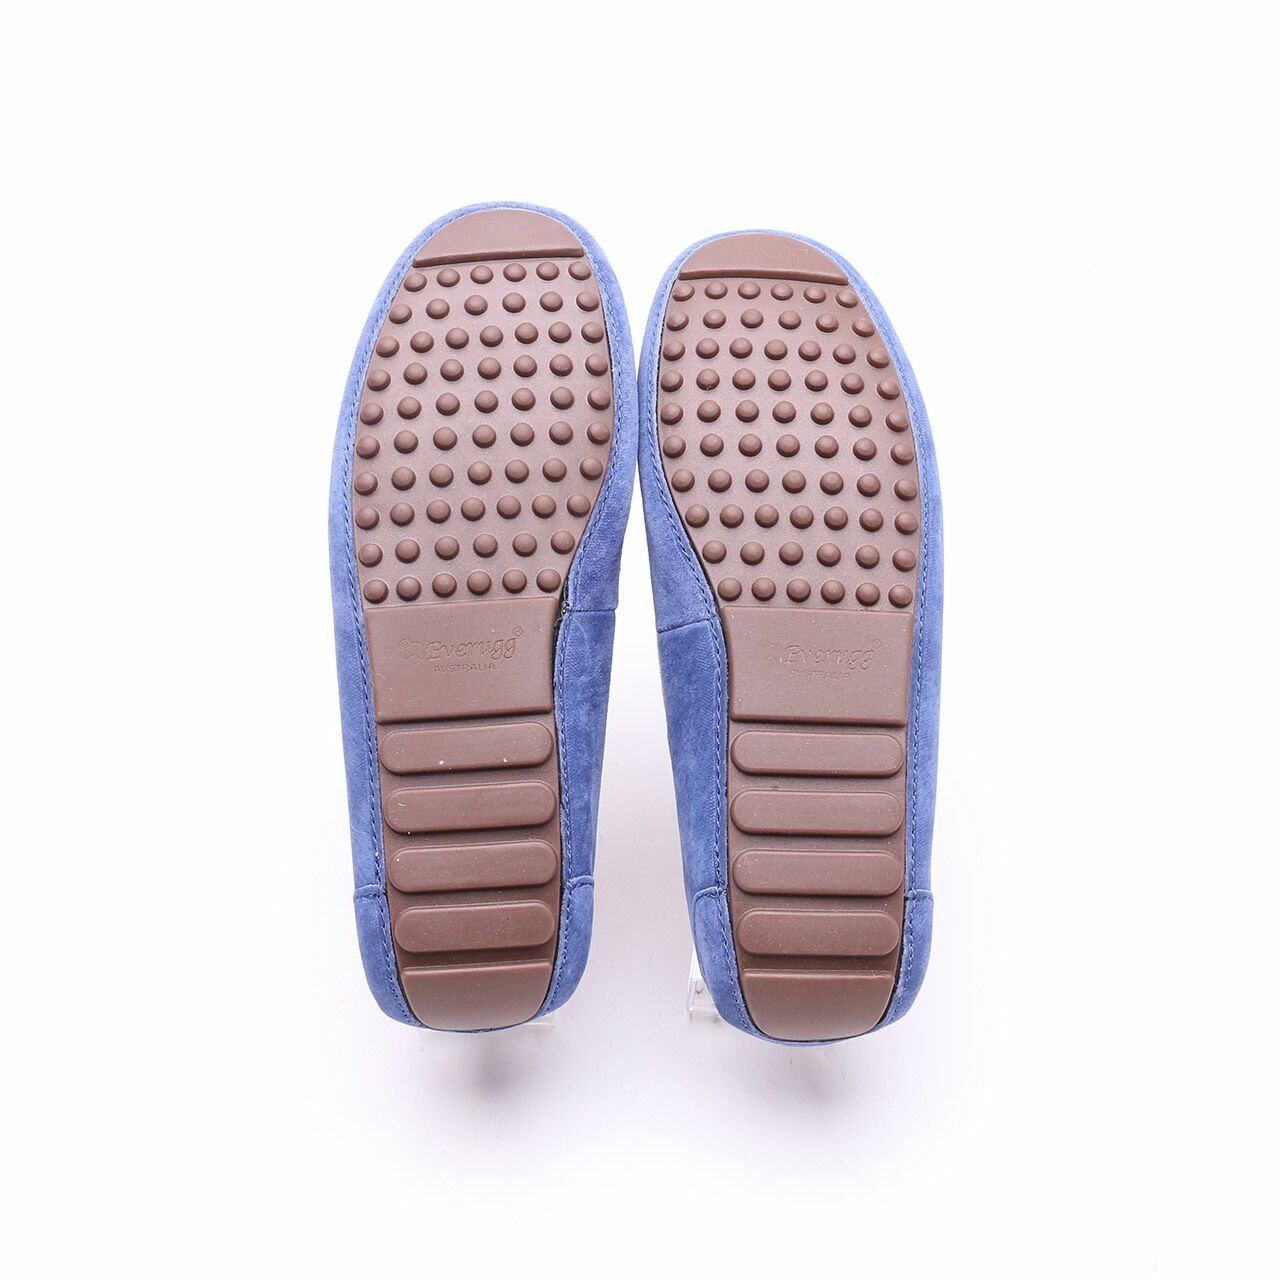 UGG Eversheepskins Blue Loafers